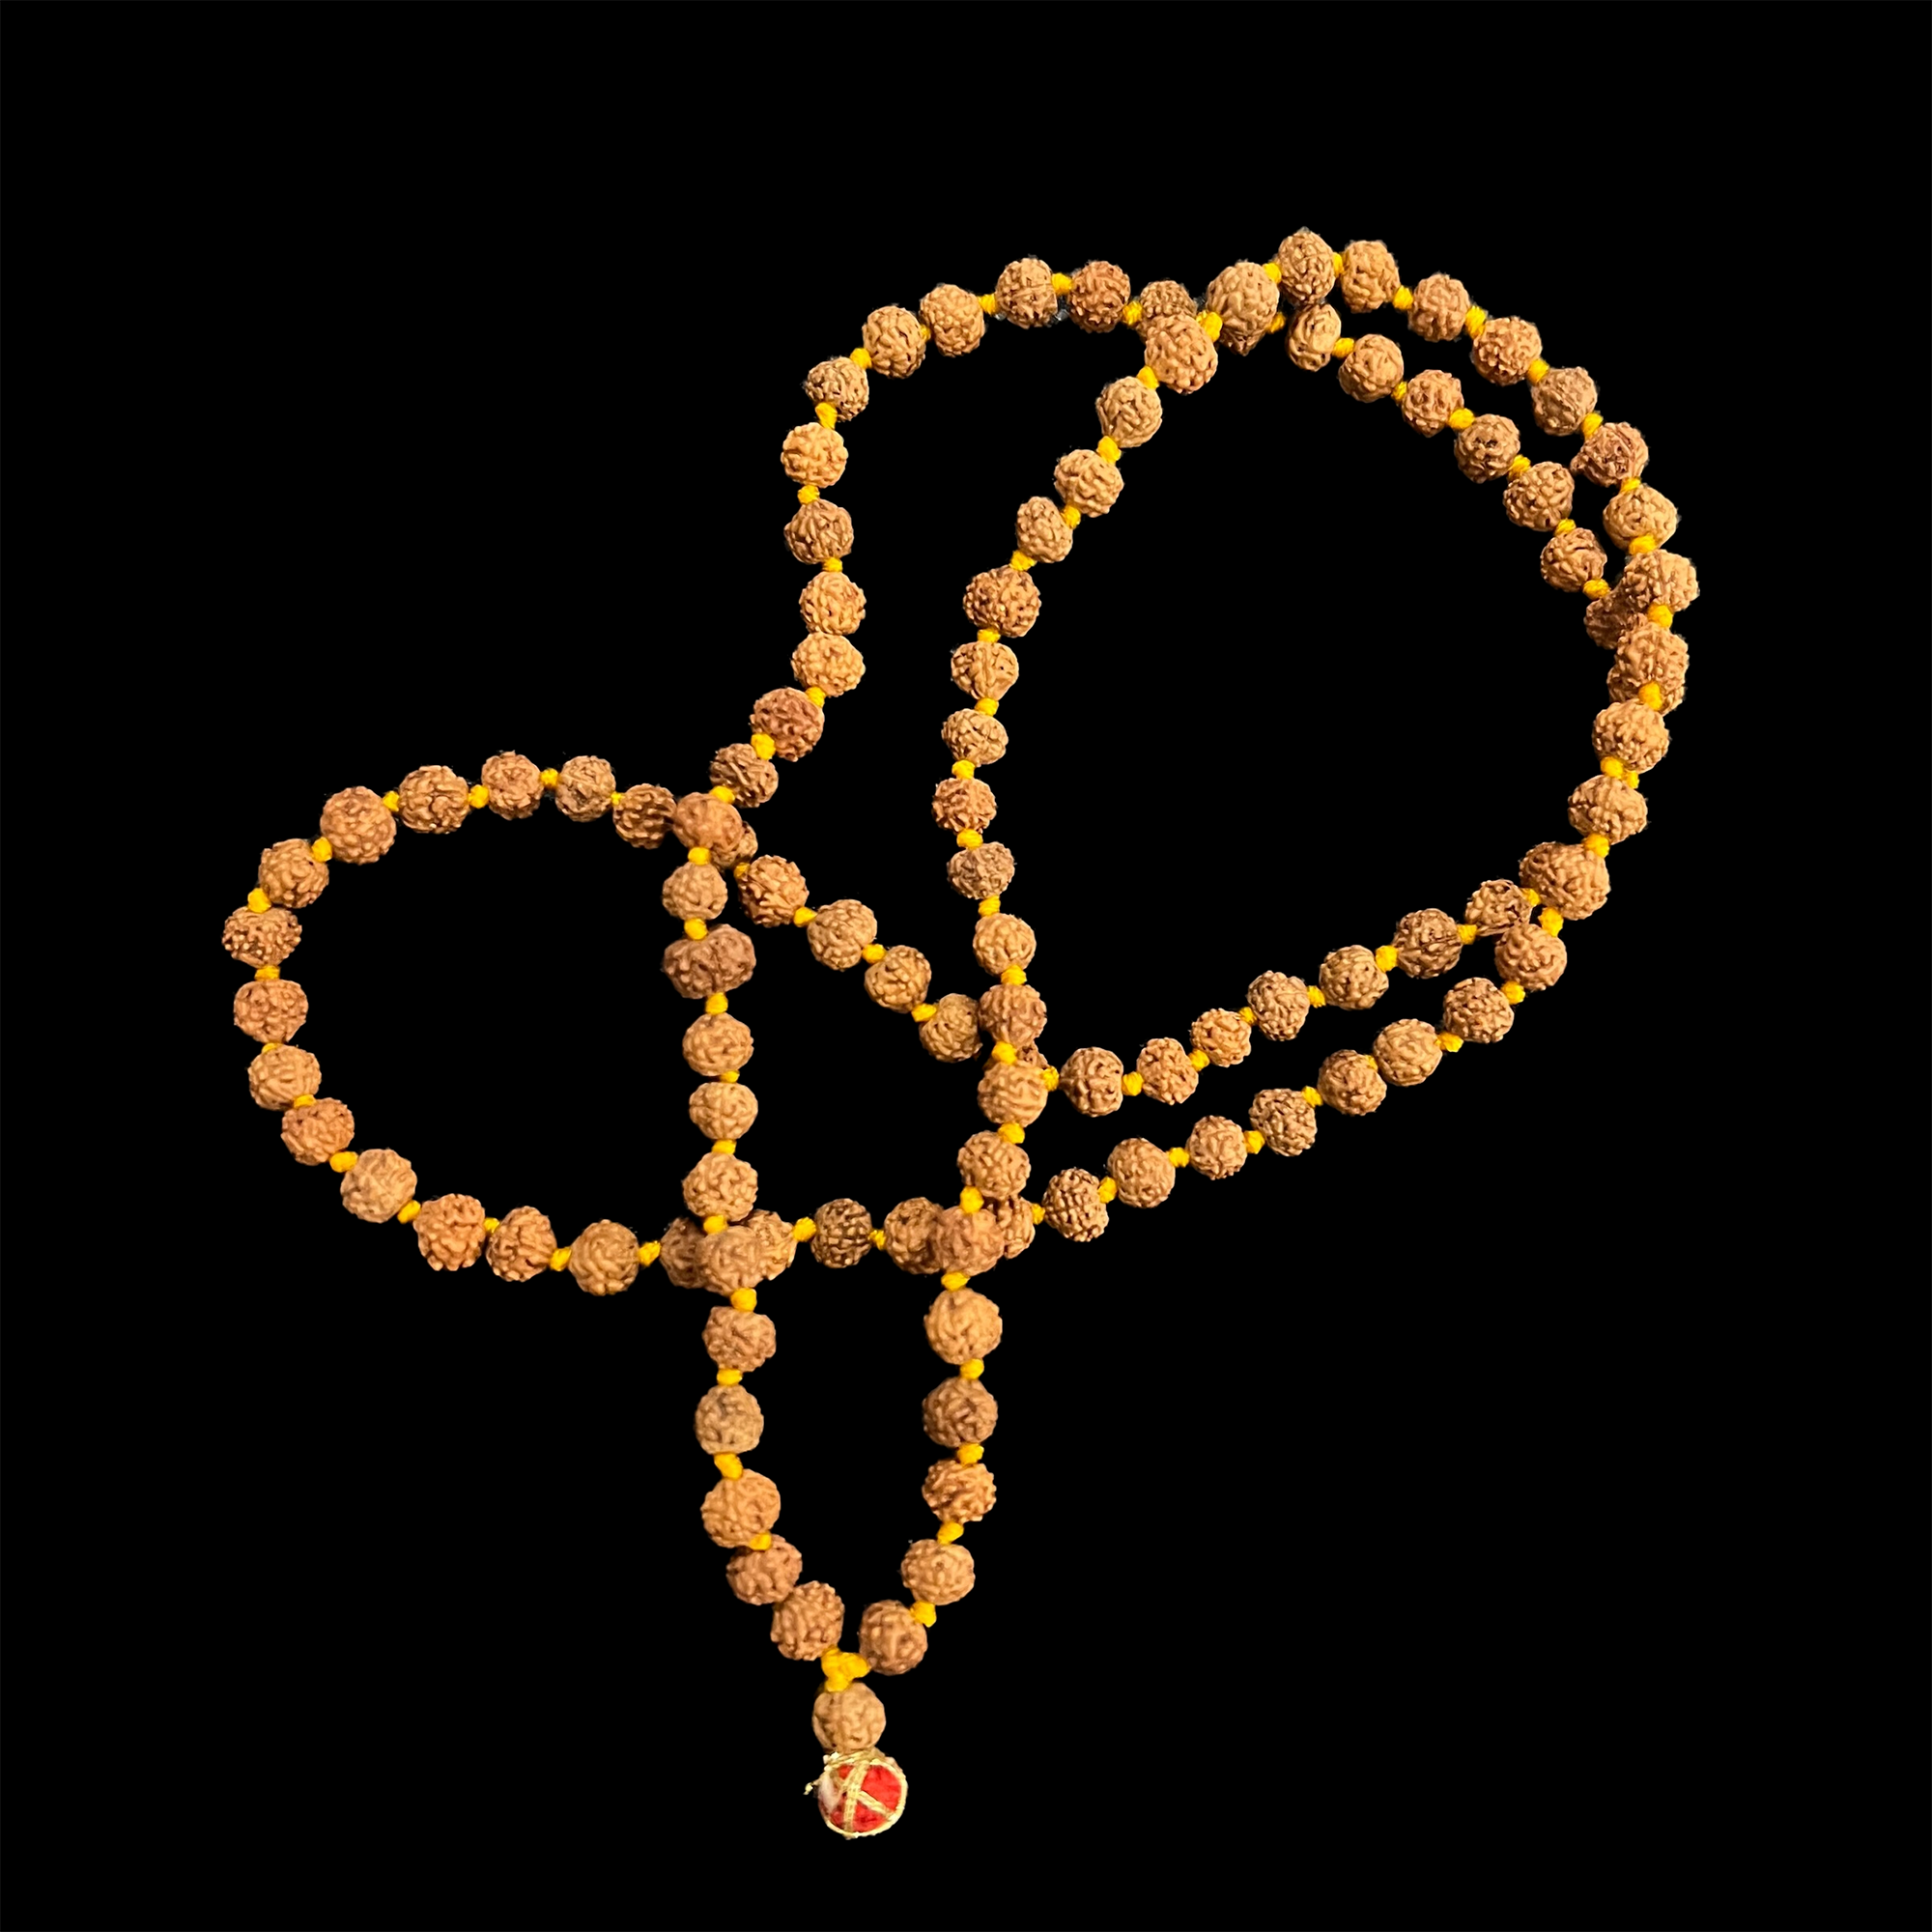 Rudraksha Med 108 Beads-5 sizes - Vintage India NYC